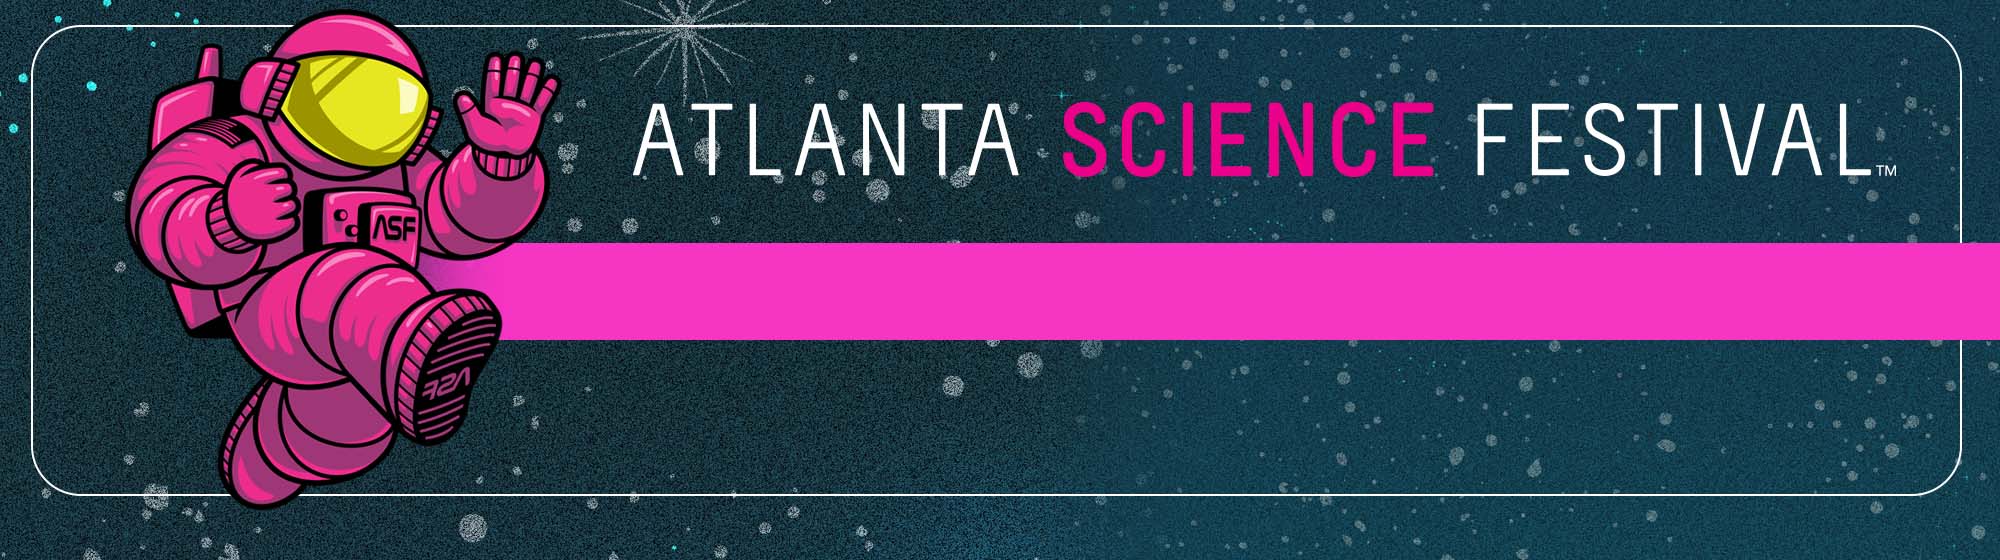 Atlanta Science Festival 2020